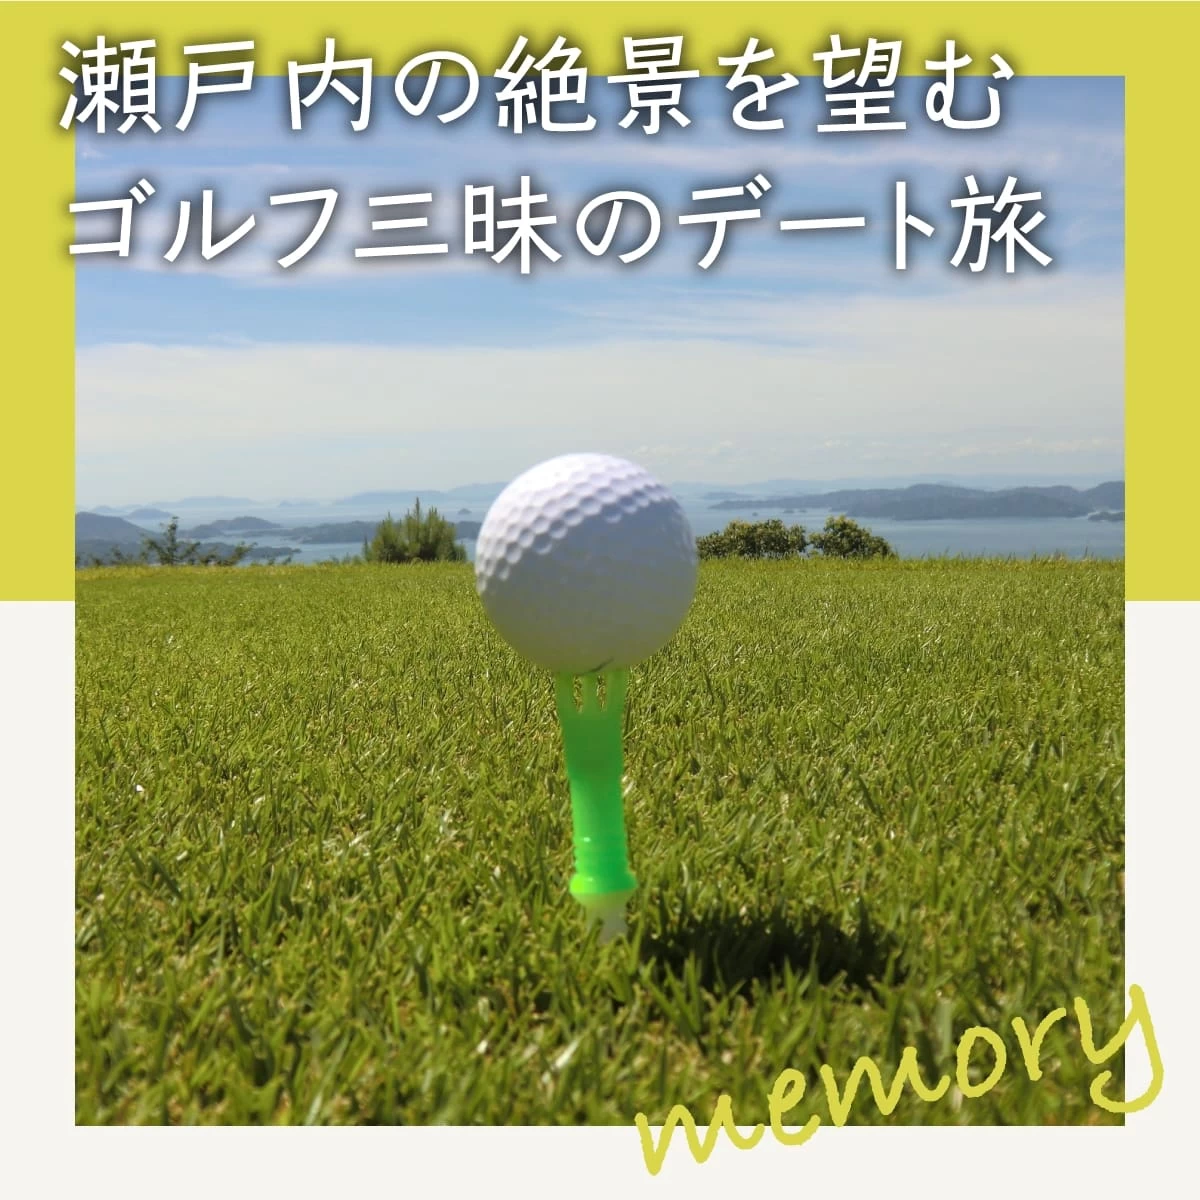 広島・瀬戸内ゴルフリゾートでゴルフ三昧！温泉も楽しむ日帰り旅